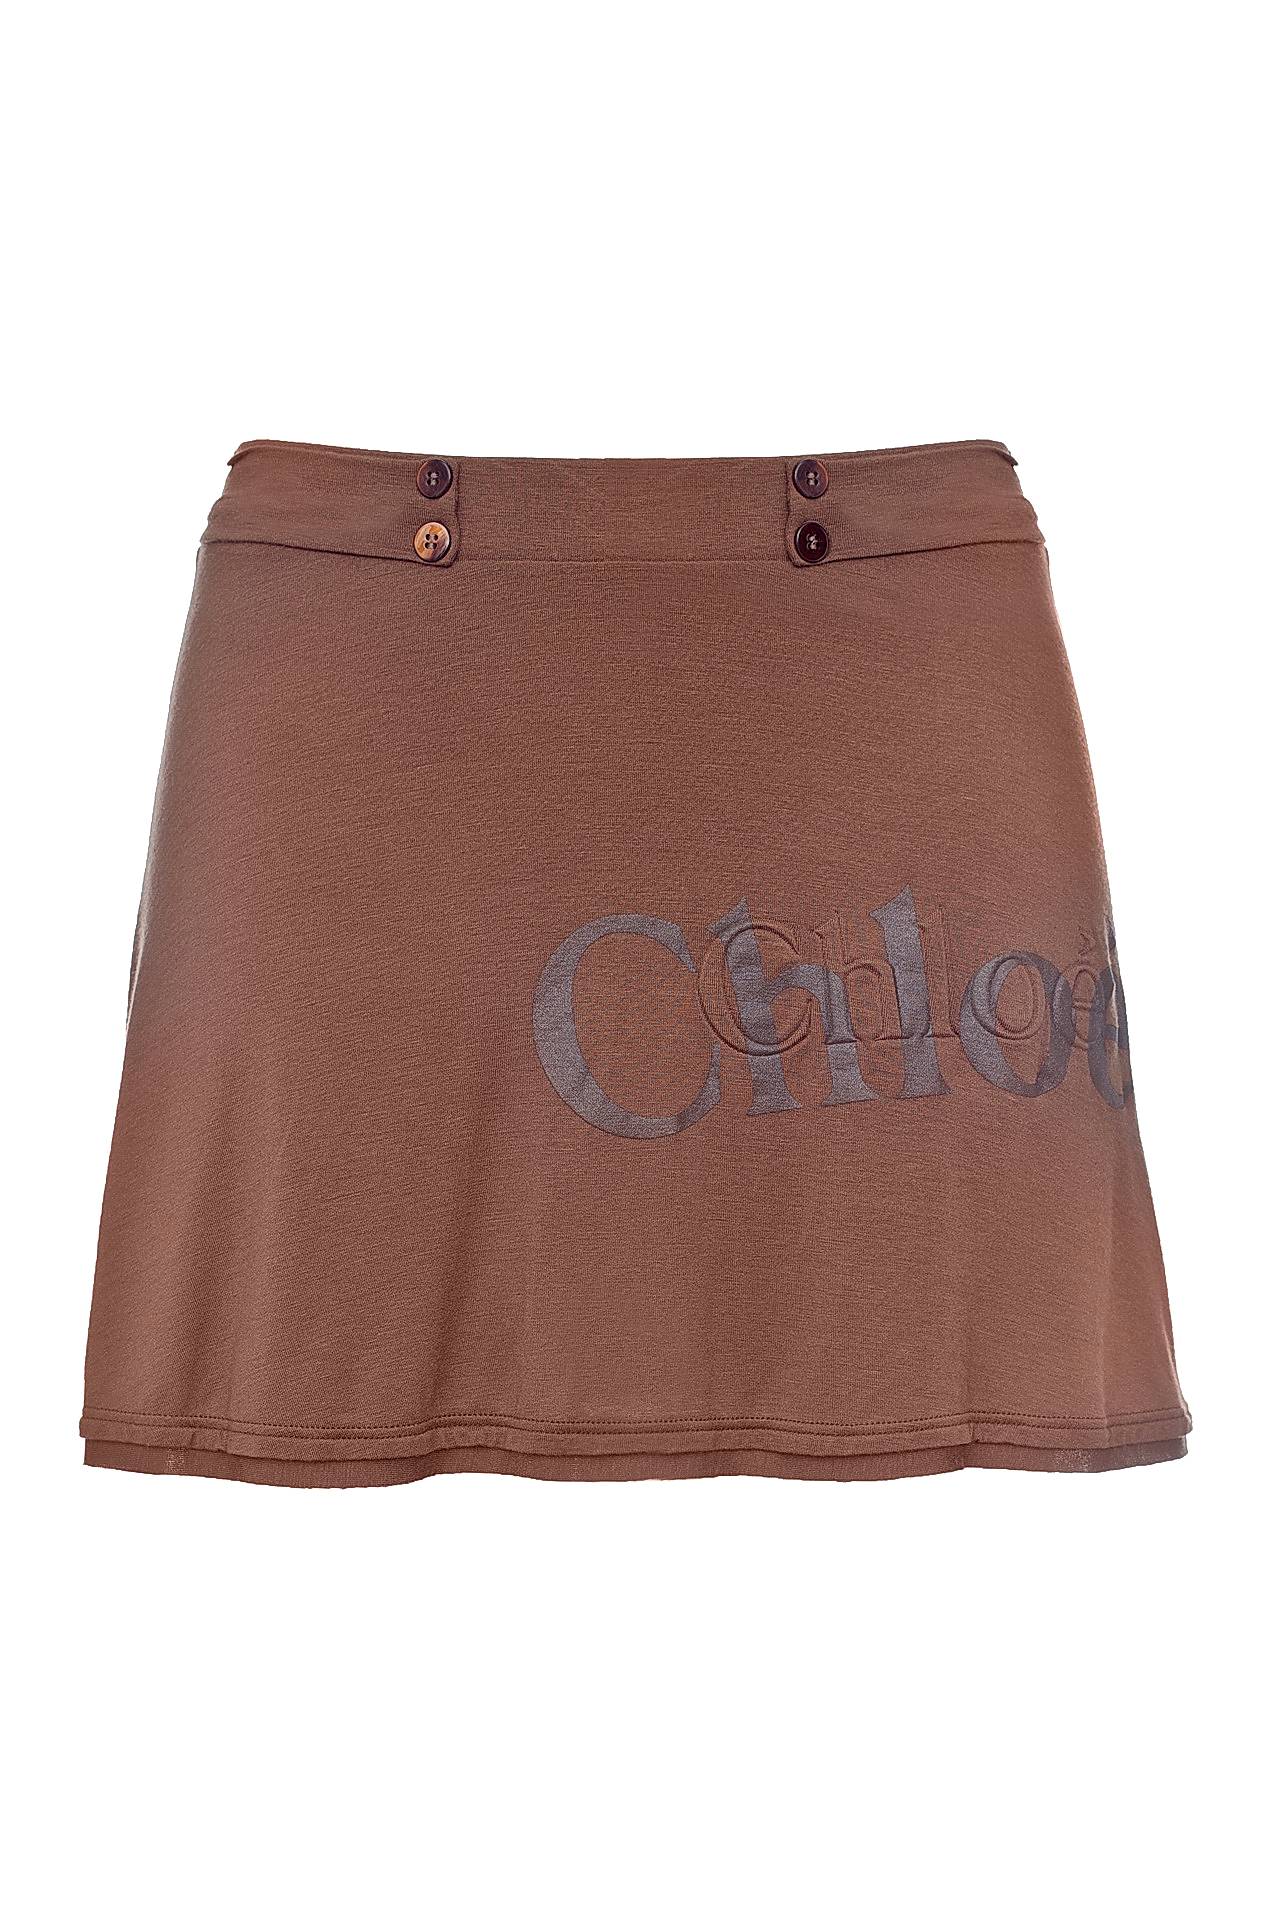 Одежда женская Юбка CHLOE (G109497/19). Купить за 6950 руб.